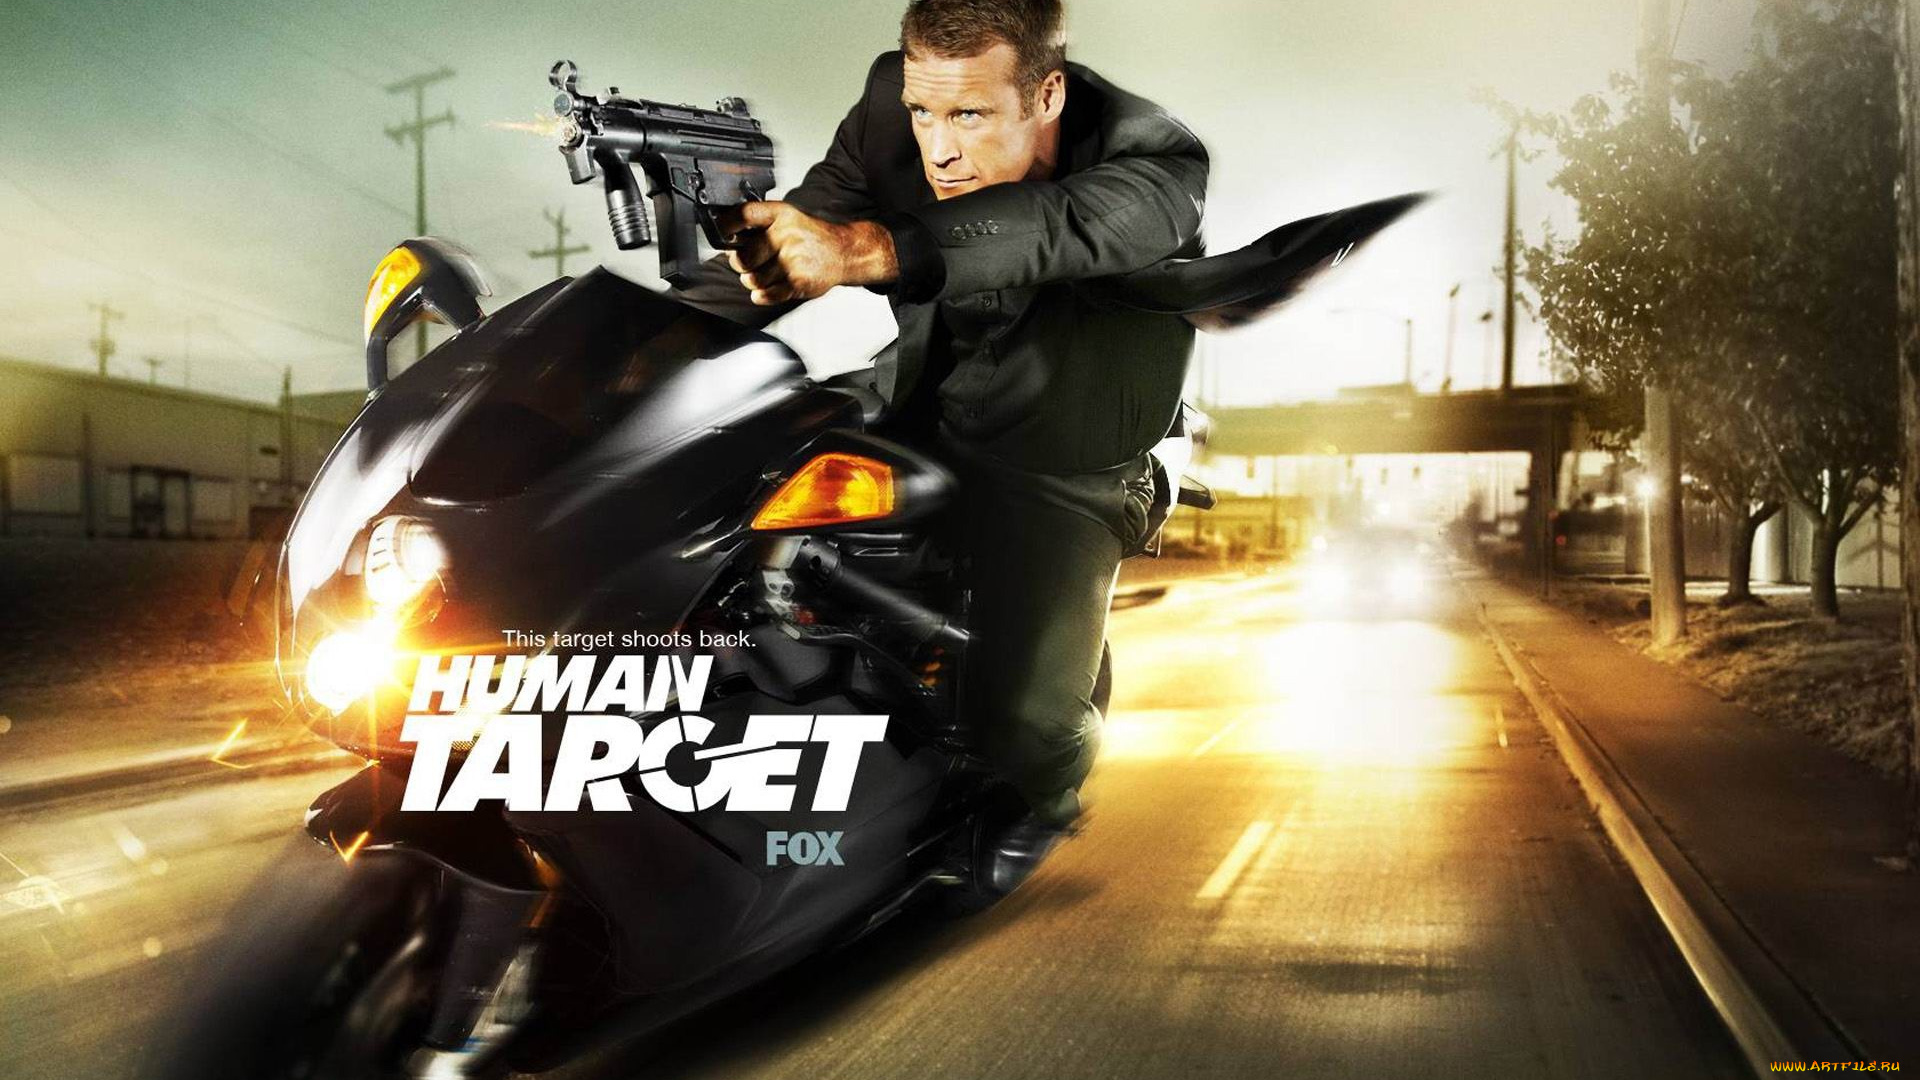 кино, фильмы, human, target, мужчина, оружие, мотоцикл, скорость